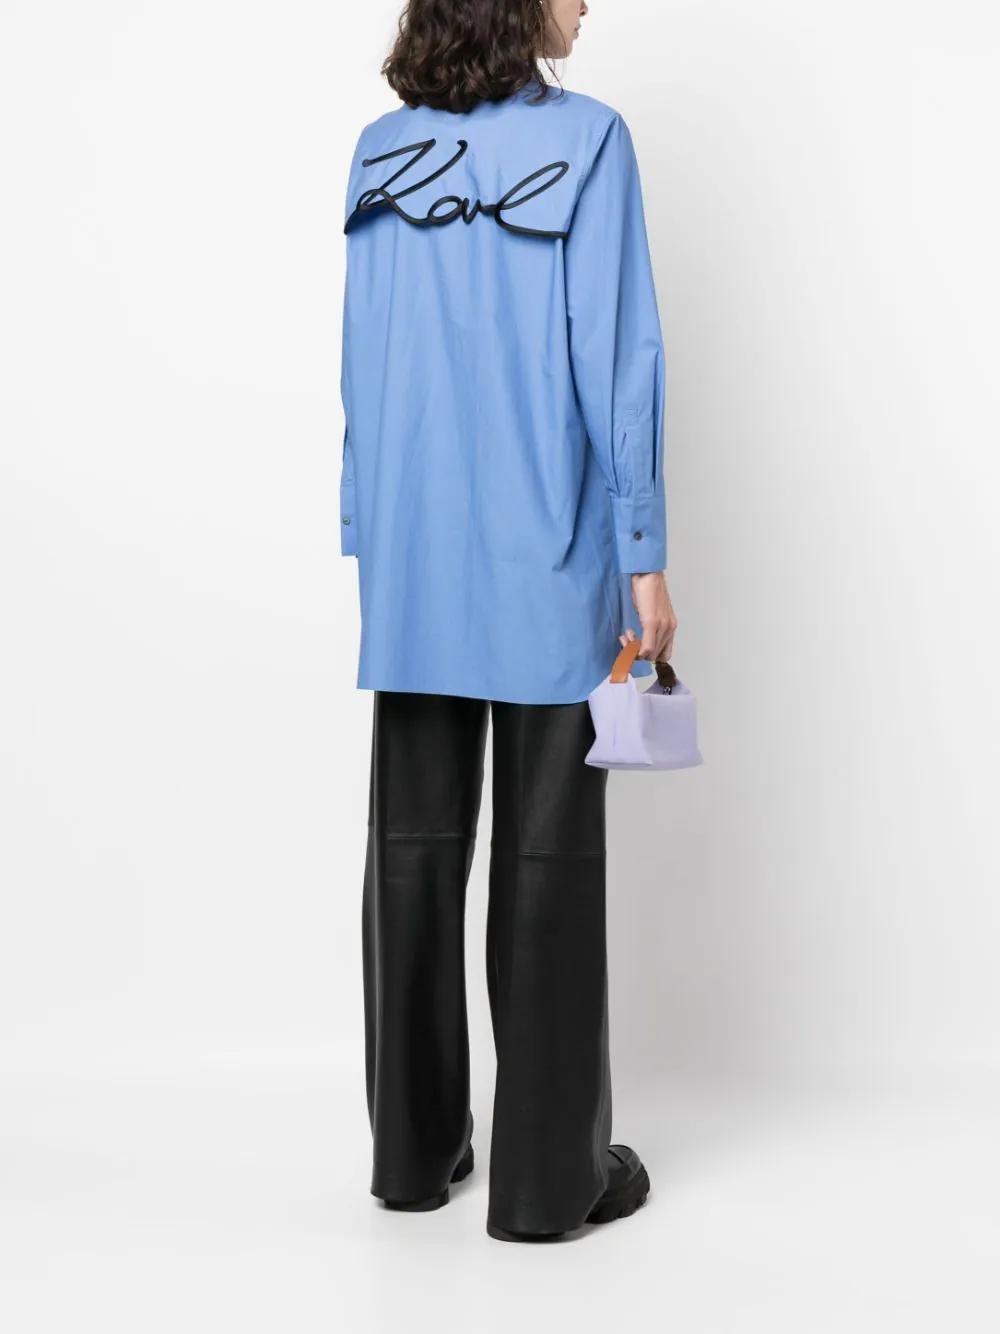 Camisa Karl Lagerfeld Azul Signature Tunic Shirt